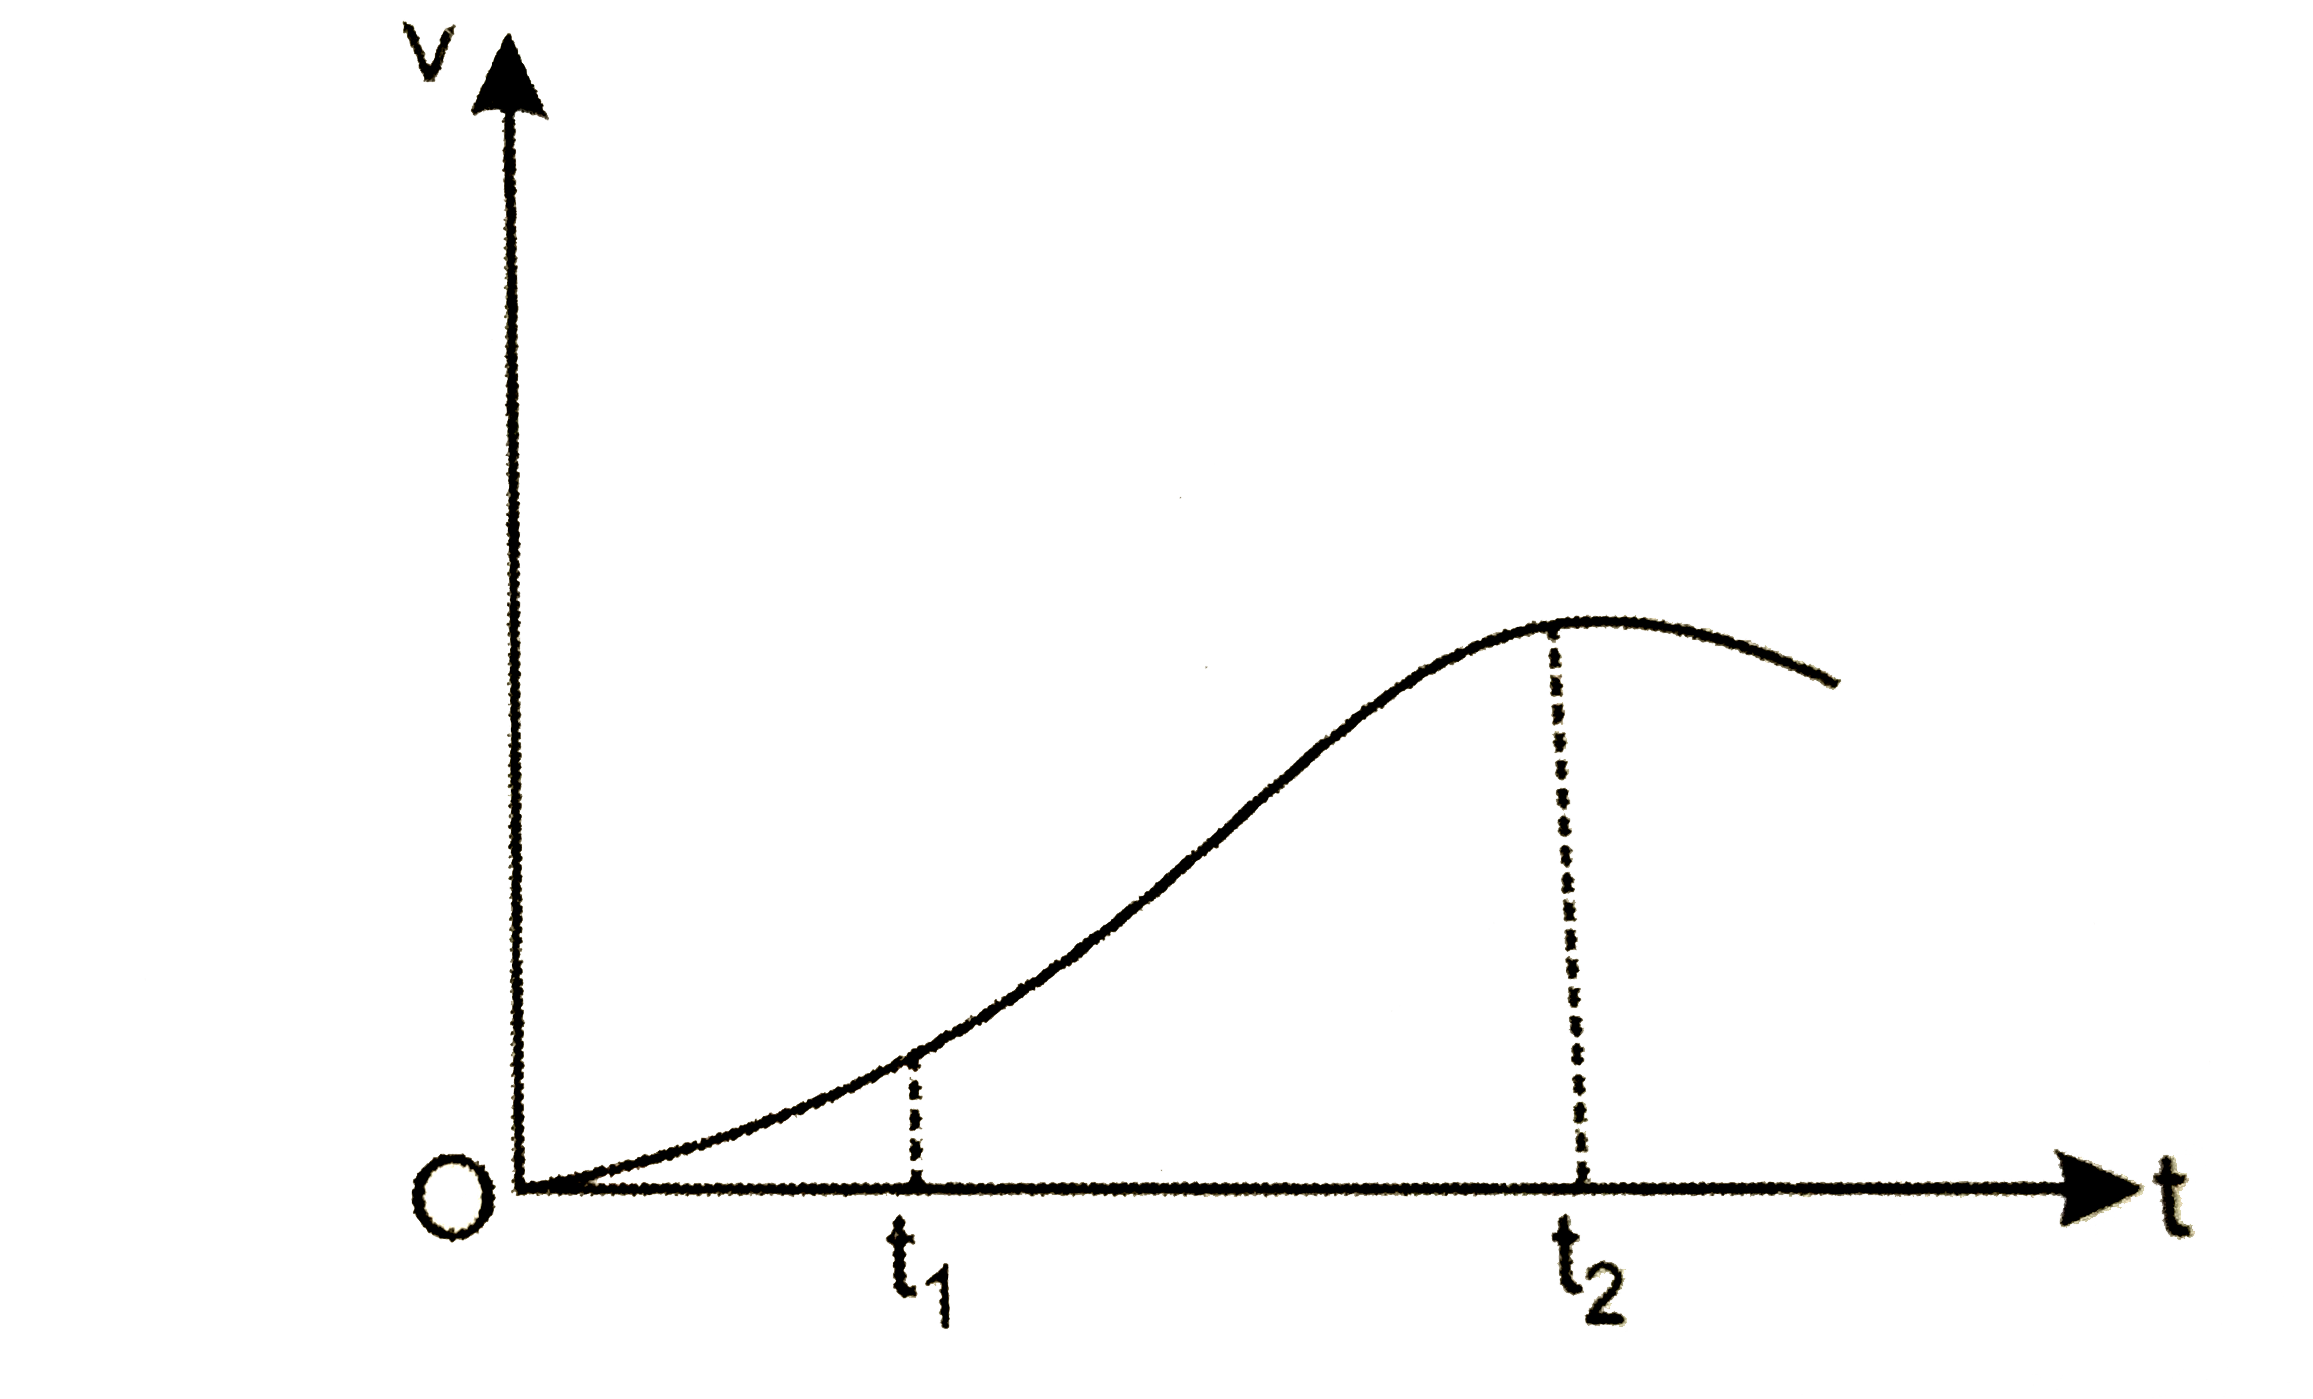 एक विमीय गति में किसी कण का वेग समय ग्राफ चित्र में दिखाया गया है । नीचे दिये सूत्रों में t(1) से t(2) तक के समयान्तराल की अवधि में कण की गति का वर्णन करने के लिए कौन से सूत्र सही है?      (a)x(t(2))=x(t(1))+v(t(1))(t(2)-t(1))+1/2(t(2)-t(1))^(2)   (b)v(t(2))=v(t(1))+a(t(2)-t(1))   (c) v(av)=[(x(t(2))-x(t(1)))/((t(2)-t(1)))]   (d) a(av)=([v(t(2))-v(t(1))])/((t(2)-t(1)))   (e) x(t(2))=x(t(1))+v(av)(t(2)-t(1))+1/2a(av)(t(2)-t(1))^(2)   (f) x(t(2))-x(t(1))=t अक्ष ता दिखाई गई बिंदुकित रेखा के बीच दर्शाए गये वक्र अन्तर्गत आने वाला क्षेत्रफल।